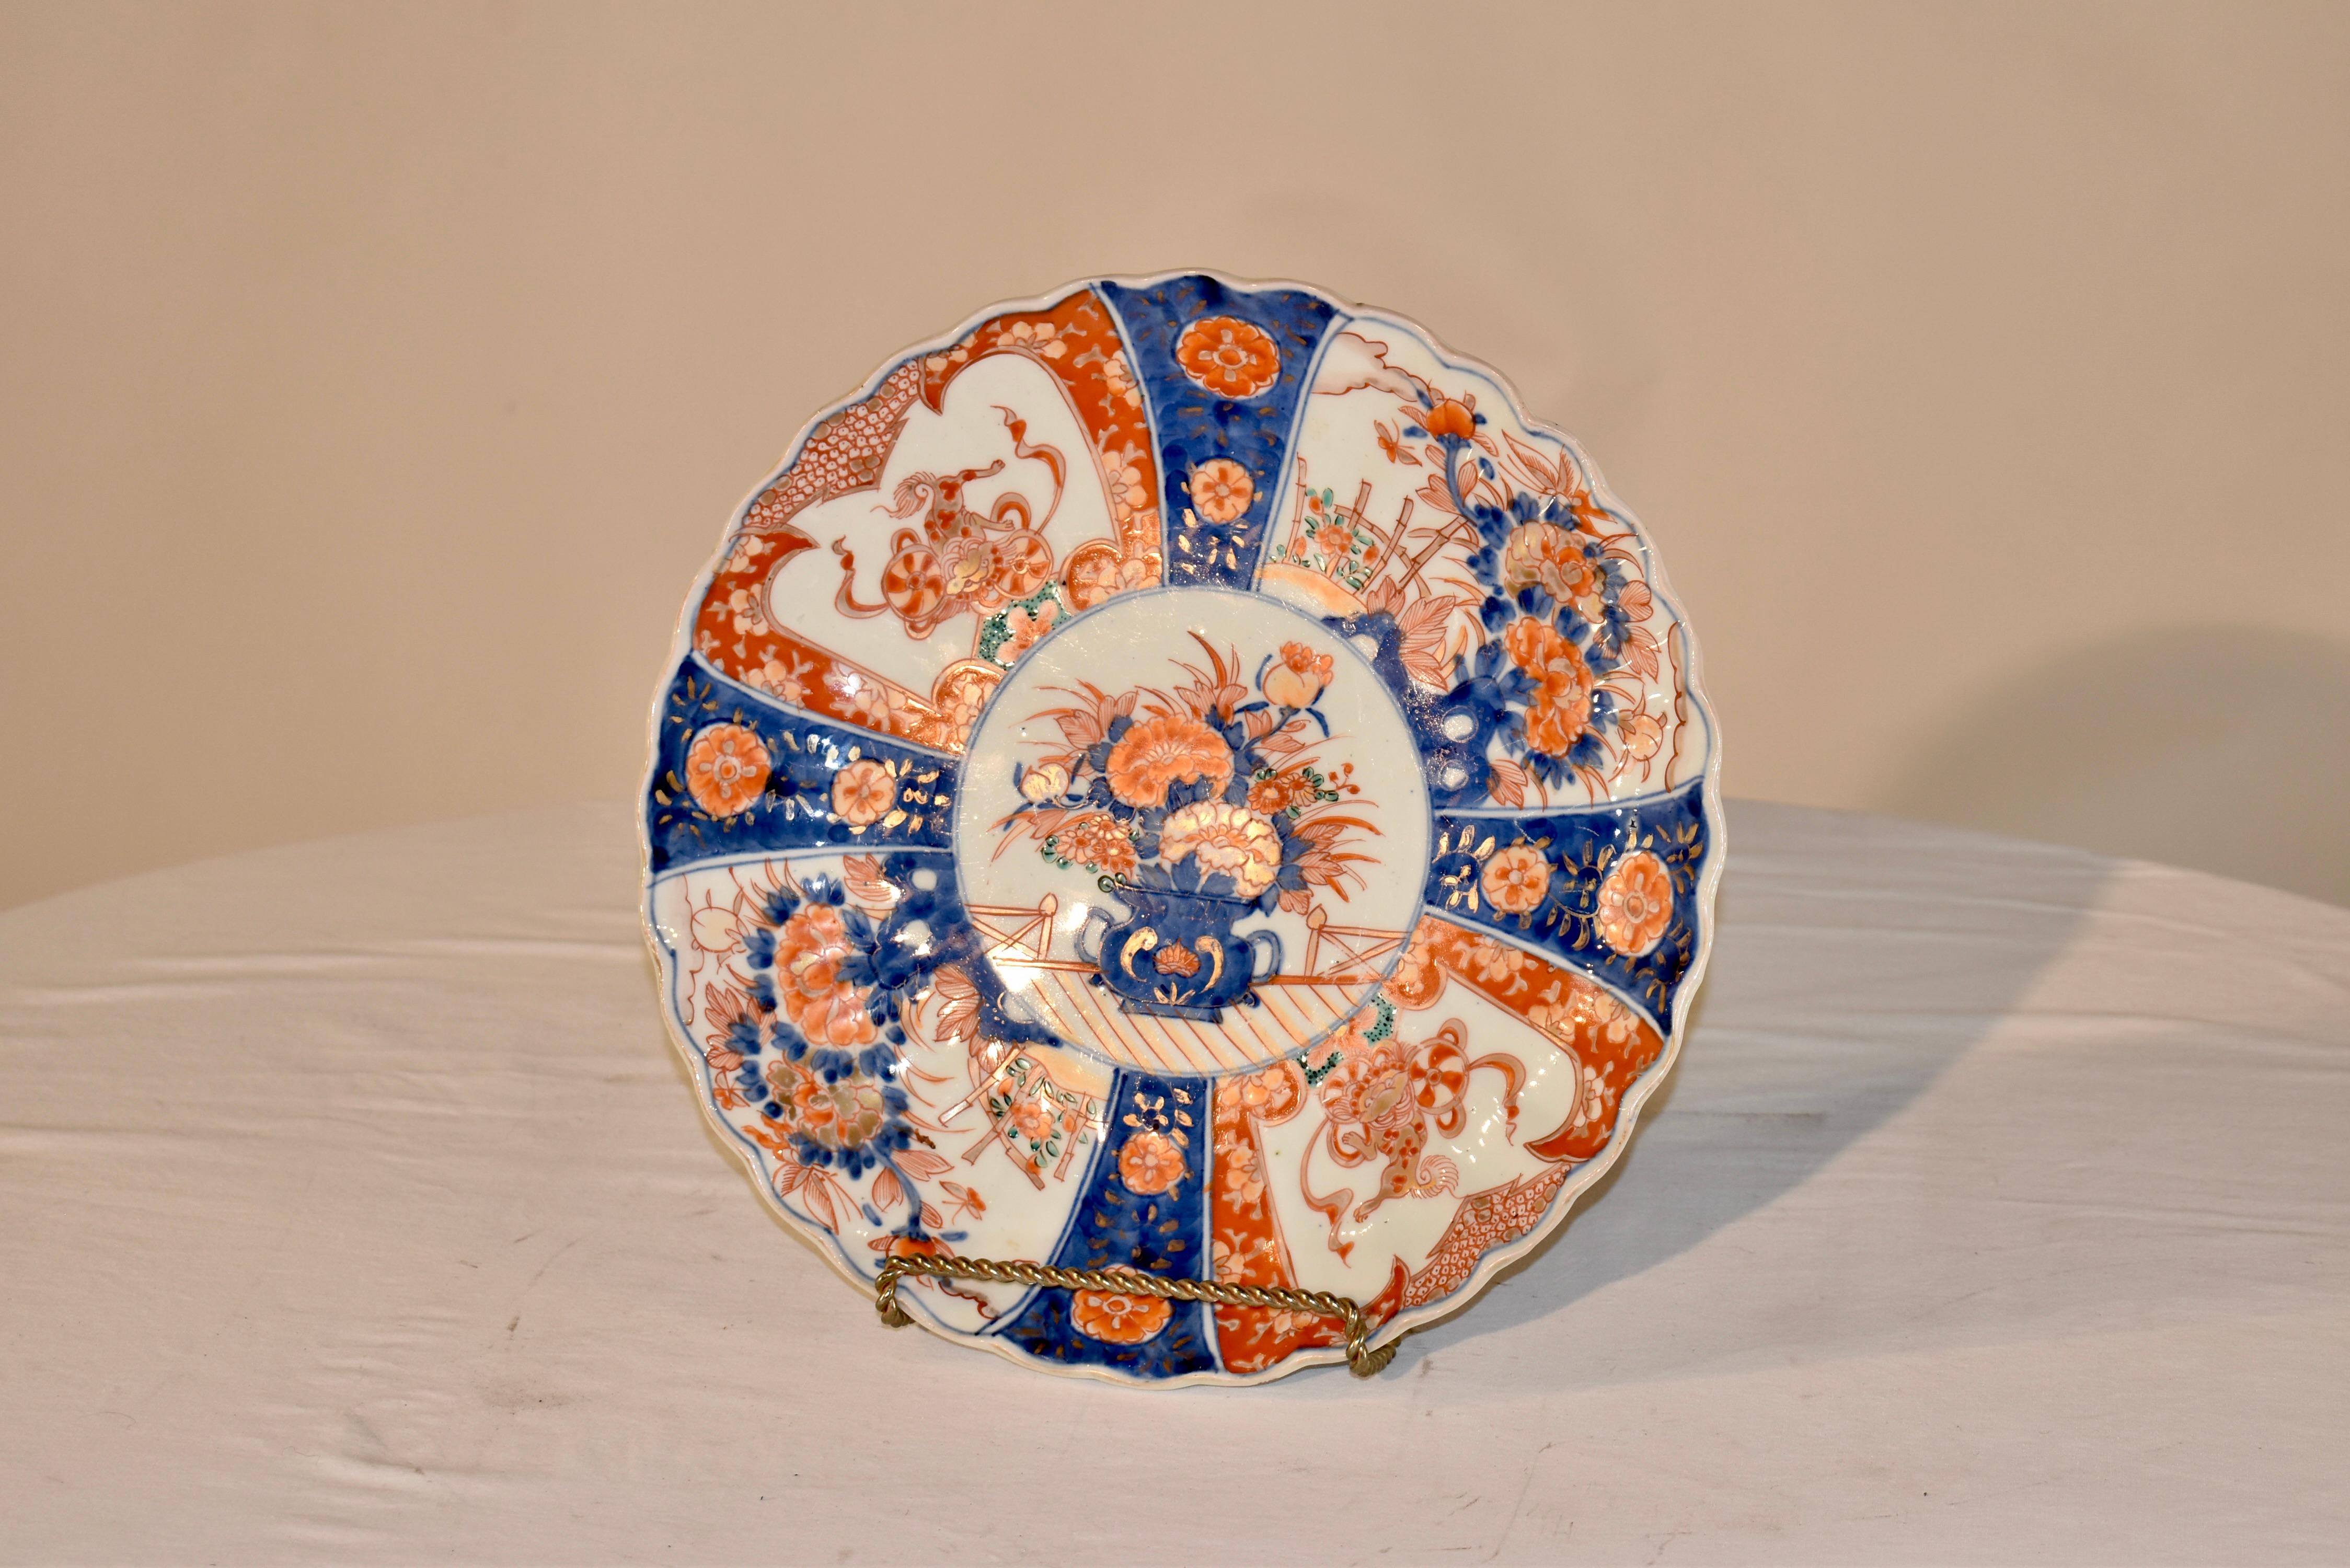 Imari-Teller aus dem späten 19. Jahrhundert. Dies ist ein schöner, tiefer Teller mit gebördeltem Rand. Das zentrale Medaillon zeigt handgemalte Blumen in einer Jardiniere, umgeben von vier handgemalten Kobaltstreifen, die mit Blumen verziert sind